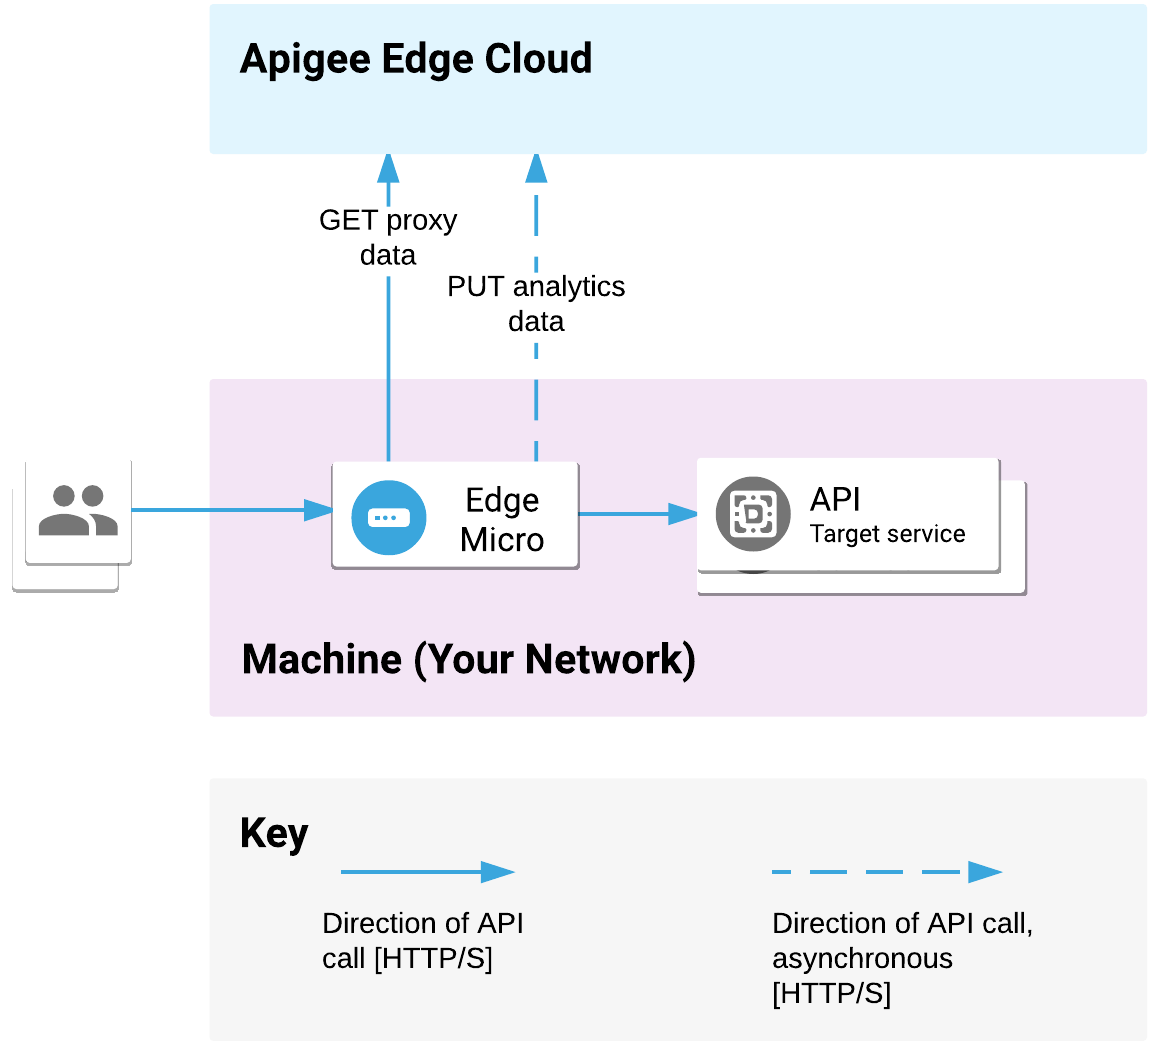 تم نشر بوابة Edge الصغيرة على شبكتك. وهي تعالج طلبات واجهة برمجة التطبيقات من العملاء والخدمات المستهدفة للمكالمات. تنقل البوابة الصغيرة بيانات الوكيل والتحليلات من خلال Apigee Edge Cloud.